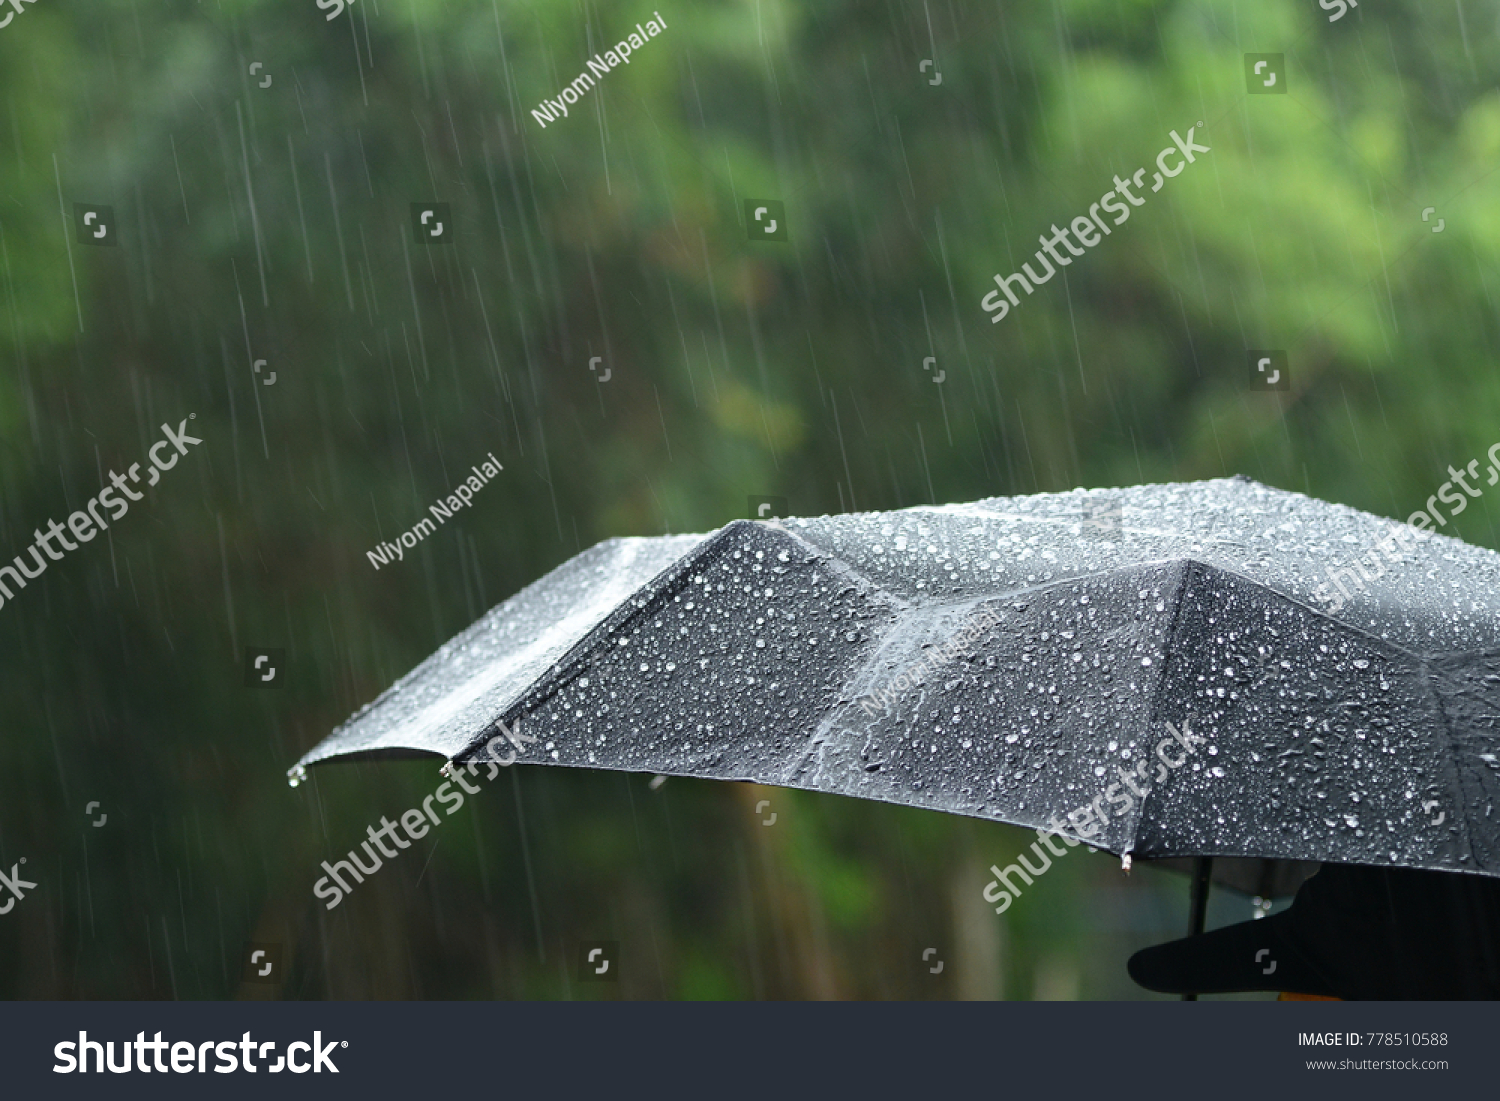 A person with umbrella in rain. #778510588